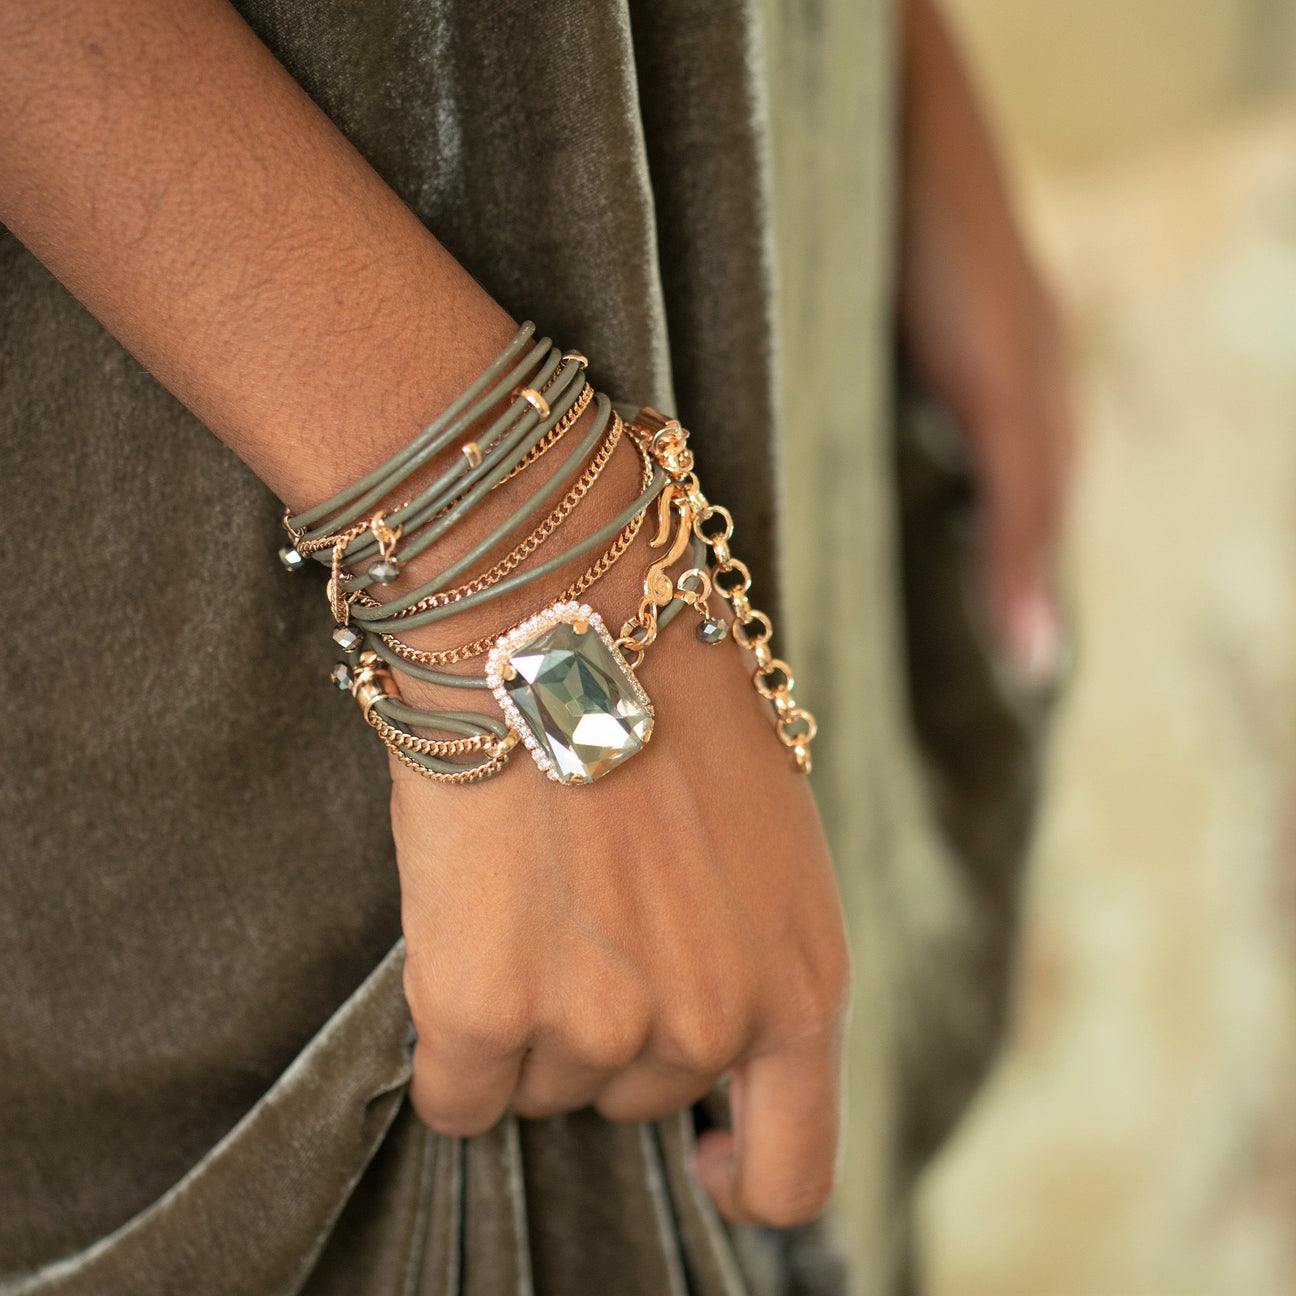 Buy latest designer bracelets online for women in Mumbai | Clasf fashion